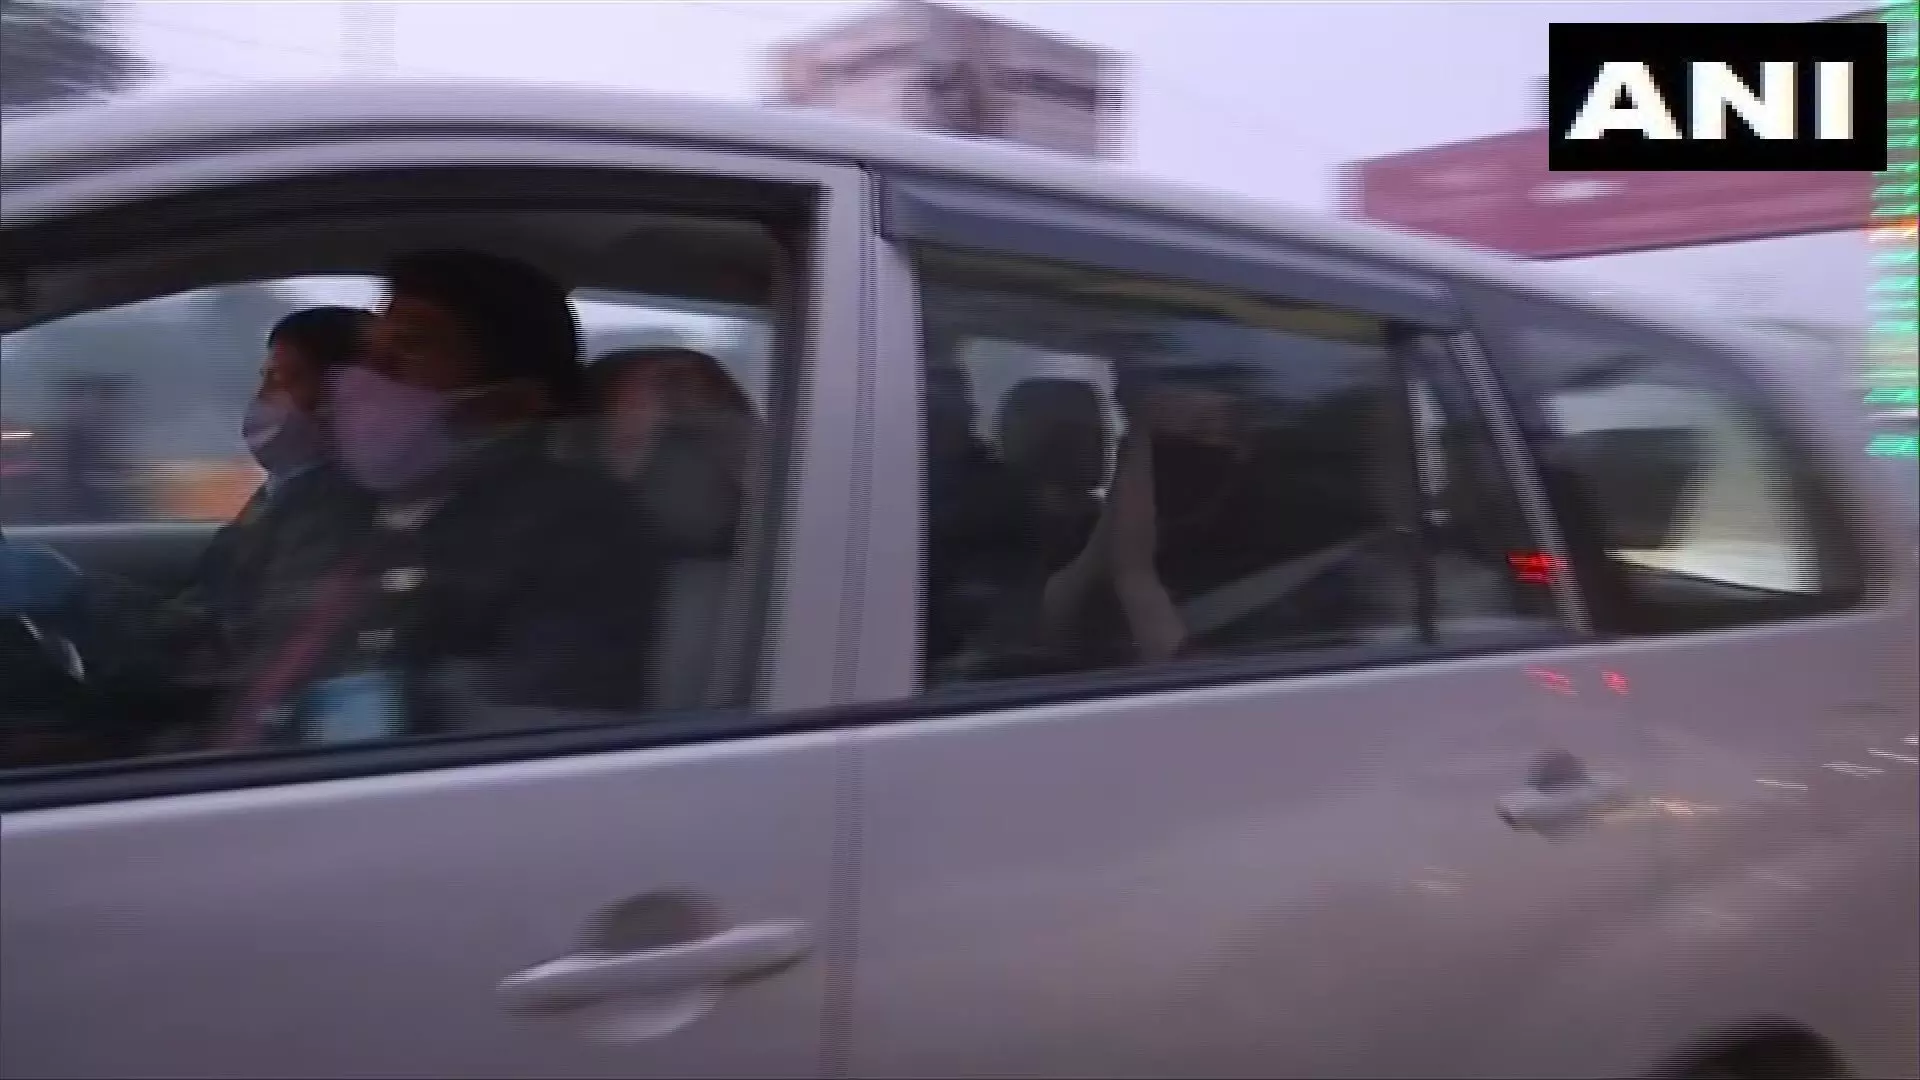 LIVE : रामपुर जा रही प्रियंका गाँधी के काफिले के वाहन आपस में टकरा गए